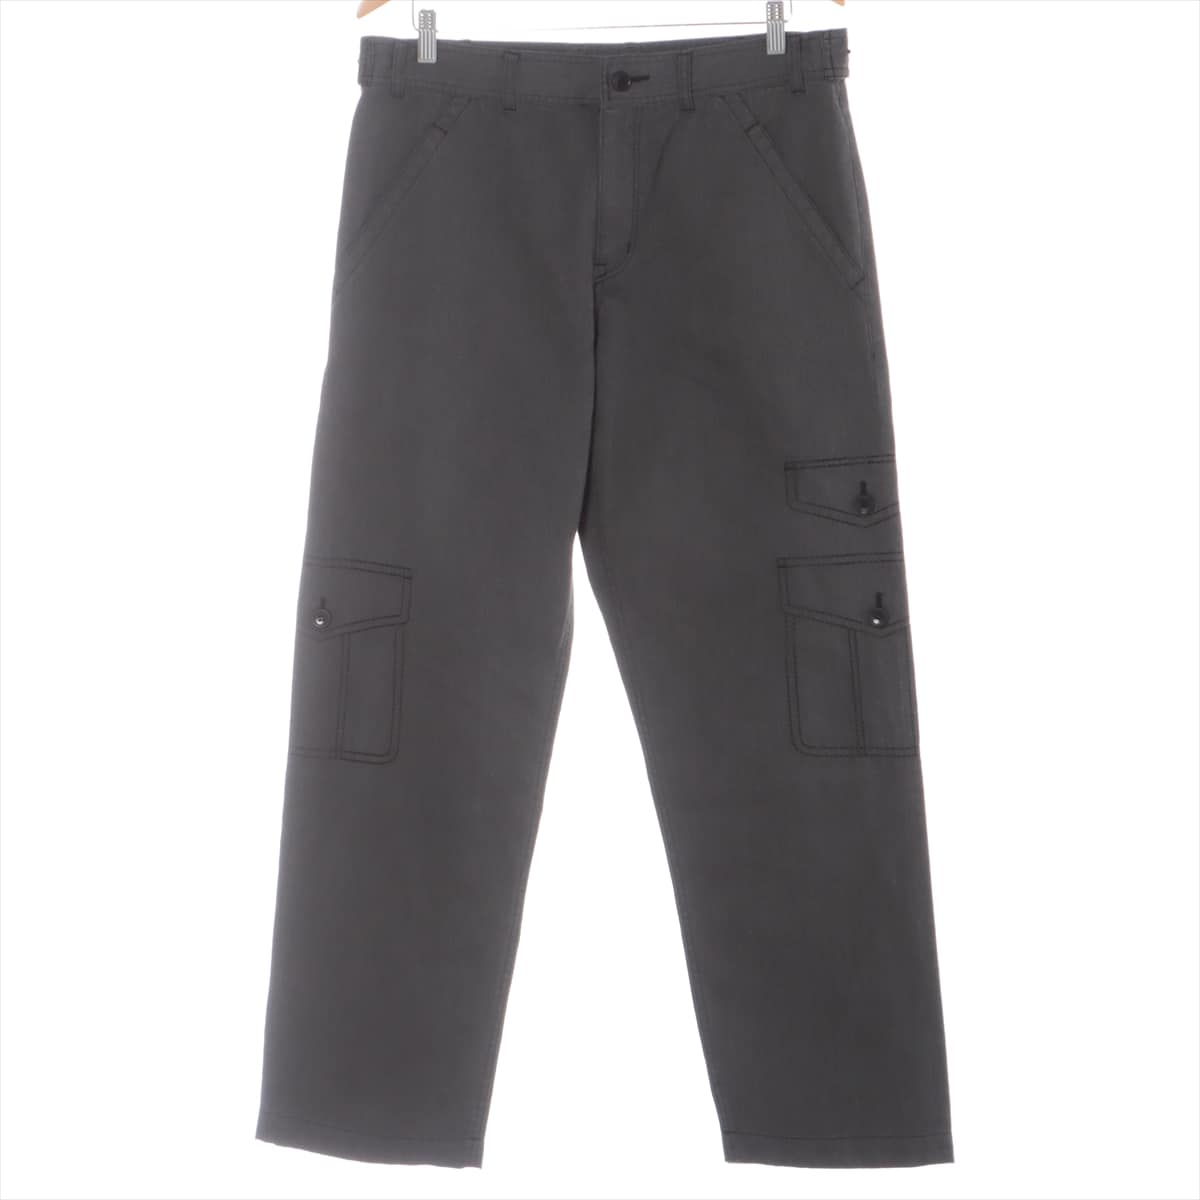 BLACK COMME des GARCONS Cotton & Polyester Cargo pants XL Men's Grey